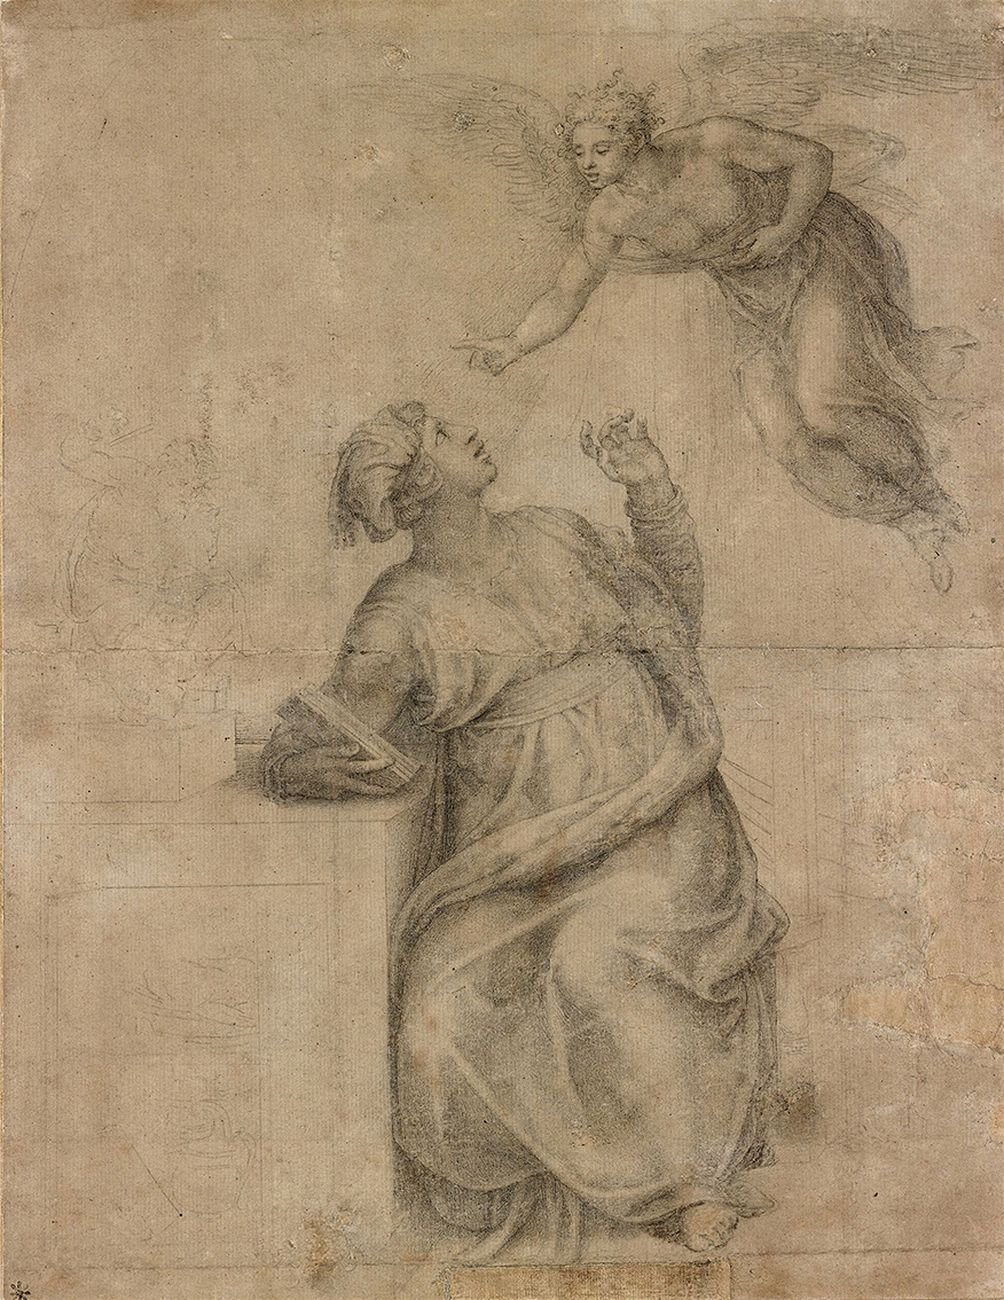 Michelangelo Buonarroti, L’Annunciazione, 383 x 297 mm, riproduzione. New York, Pierpont Morgan Library